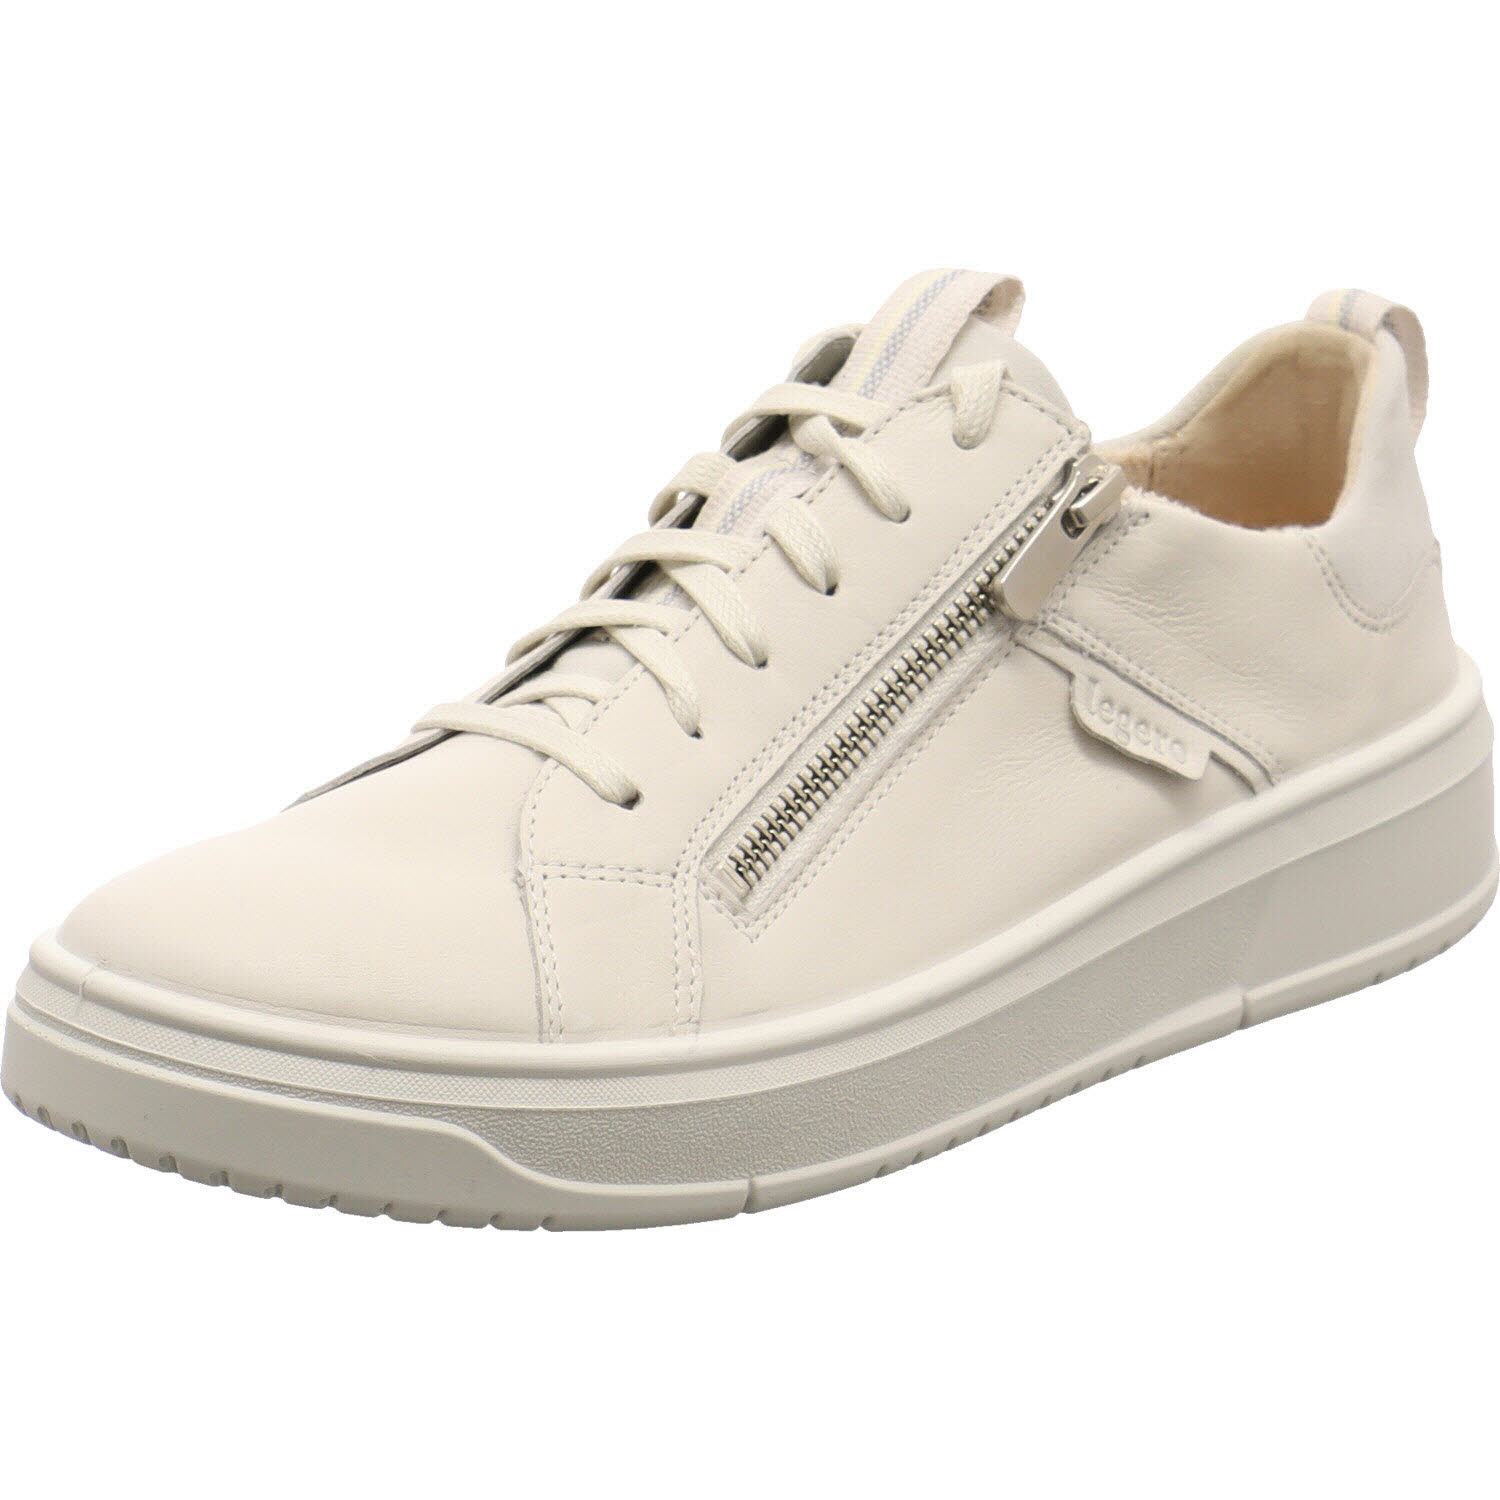 Damen Sneaker low von Legero auch in Weiß erhältlich